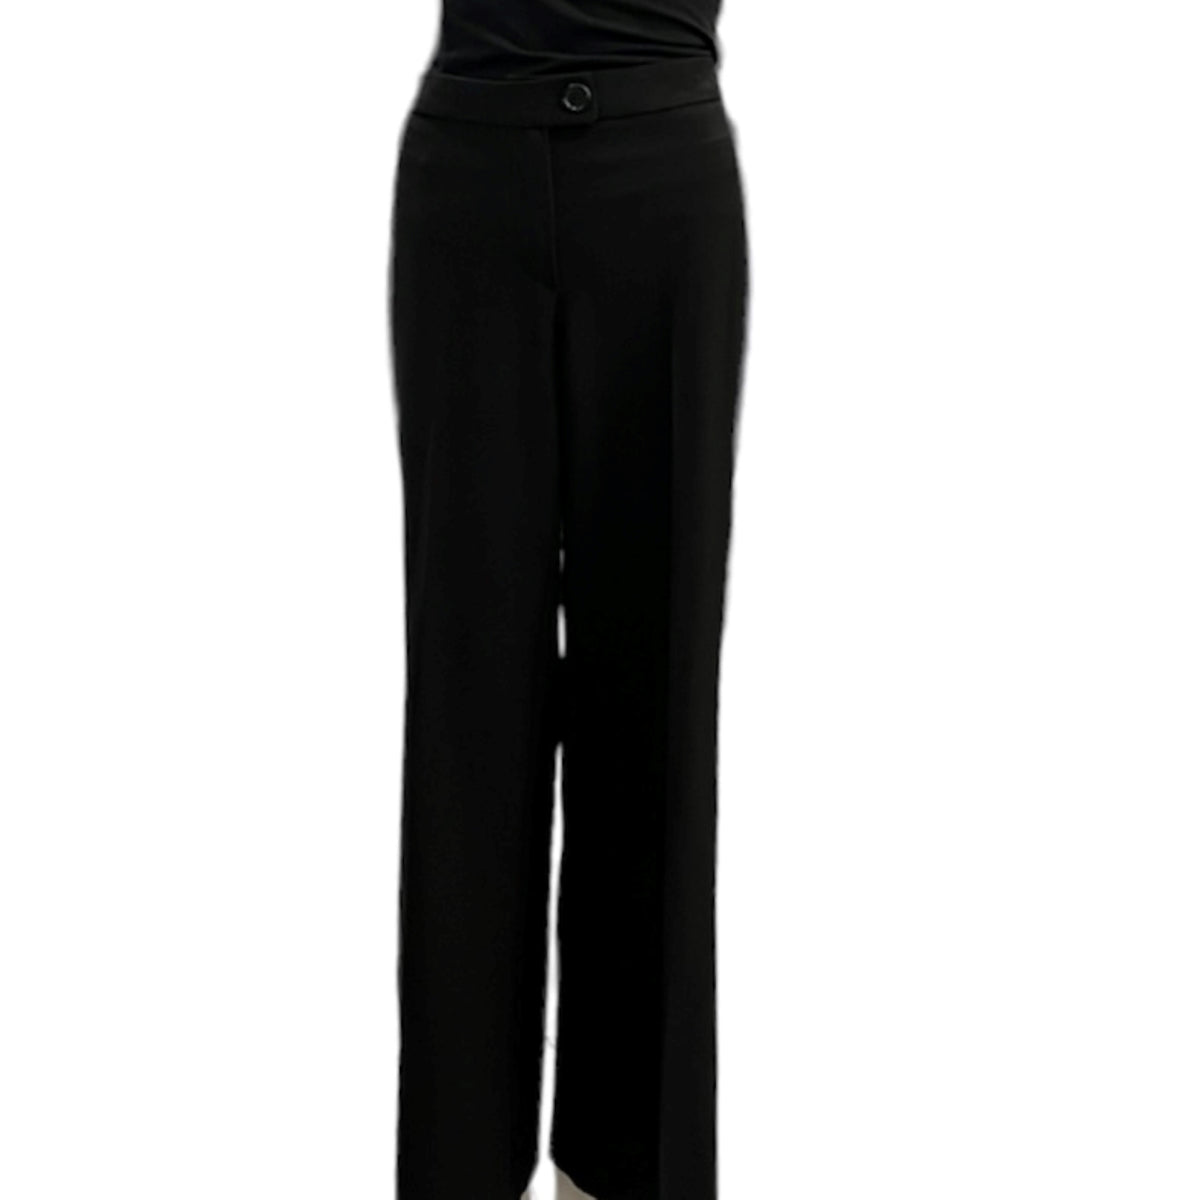 Défiez le statu quo et éclatez la mode avec ce pantalon ample noir C'EST ELLE. Développez votre confiance grâce aux jambes amples qui vous donnent une silhouette imposante. Faites-vous remarquer et dévoilez votre fashion attitude!